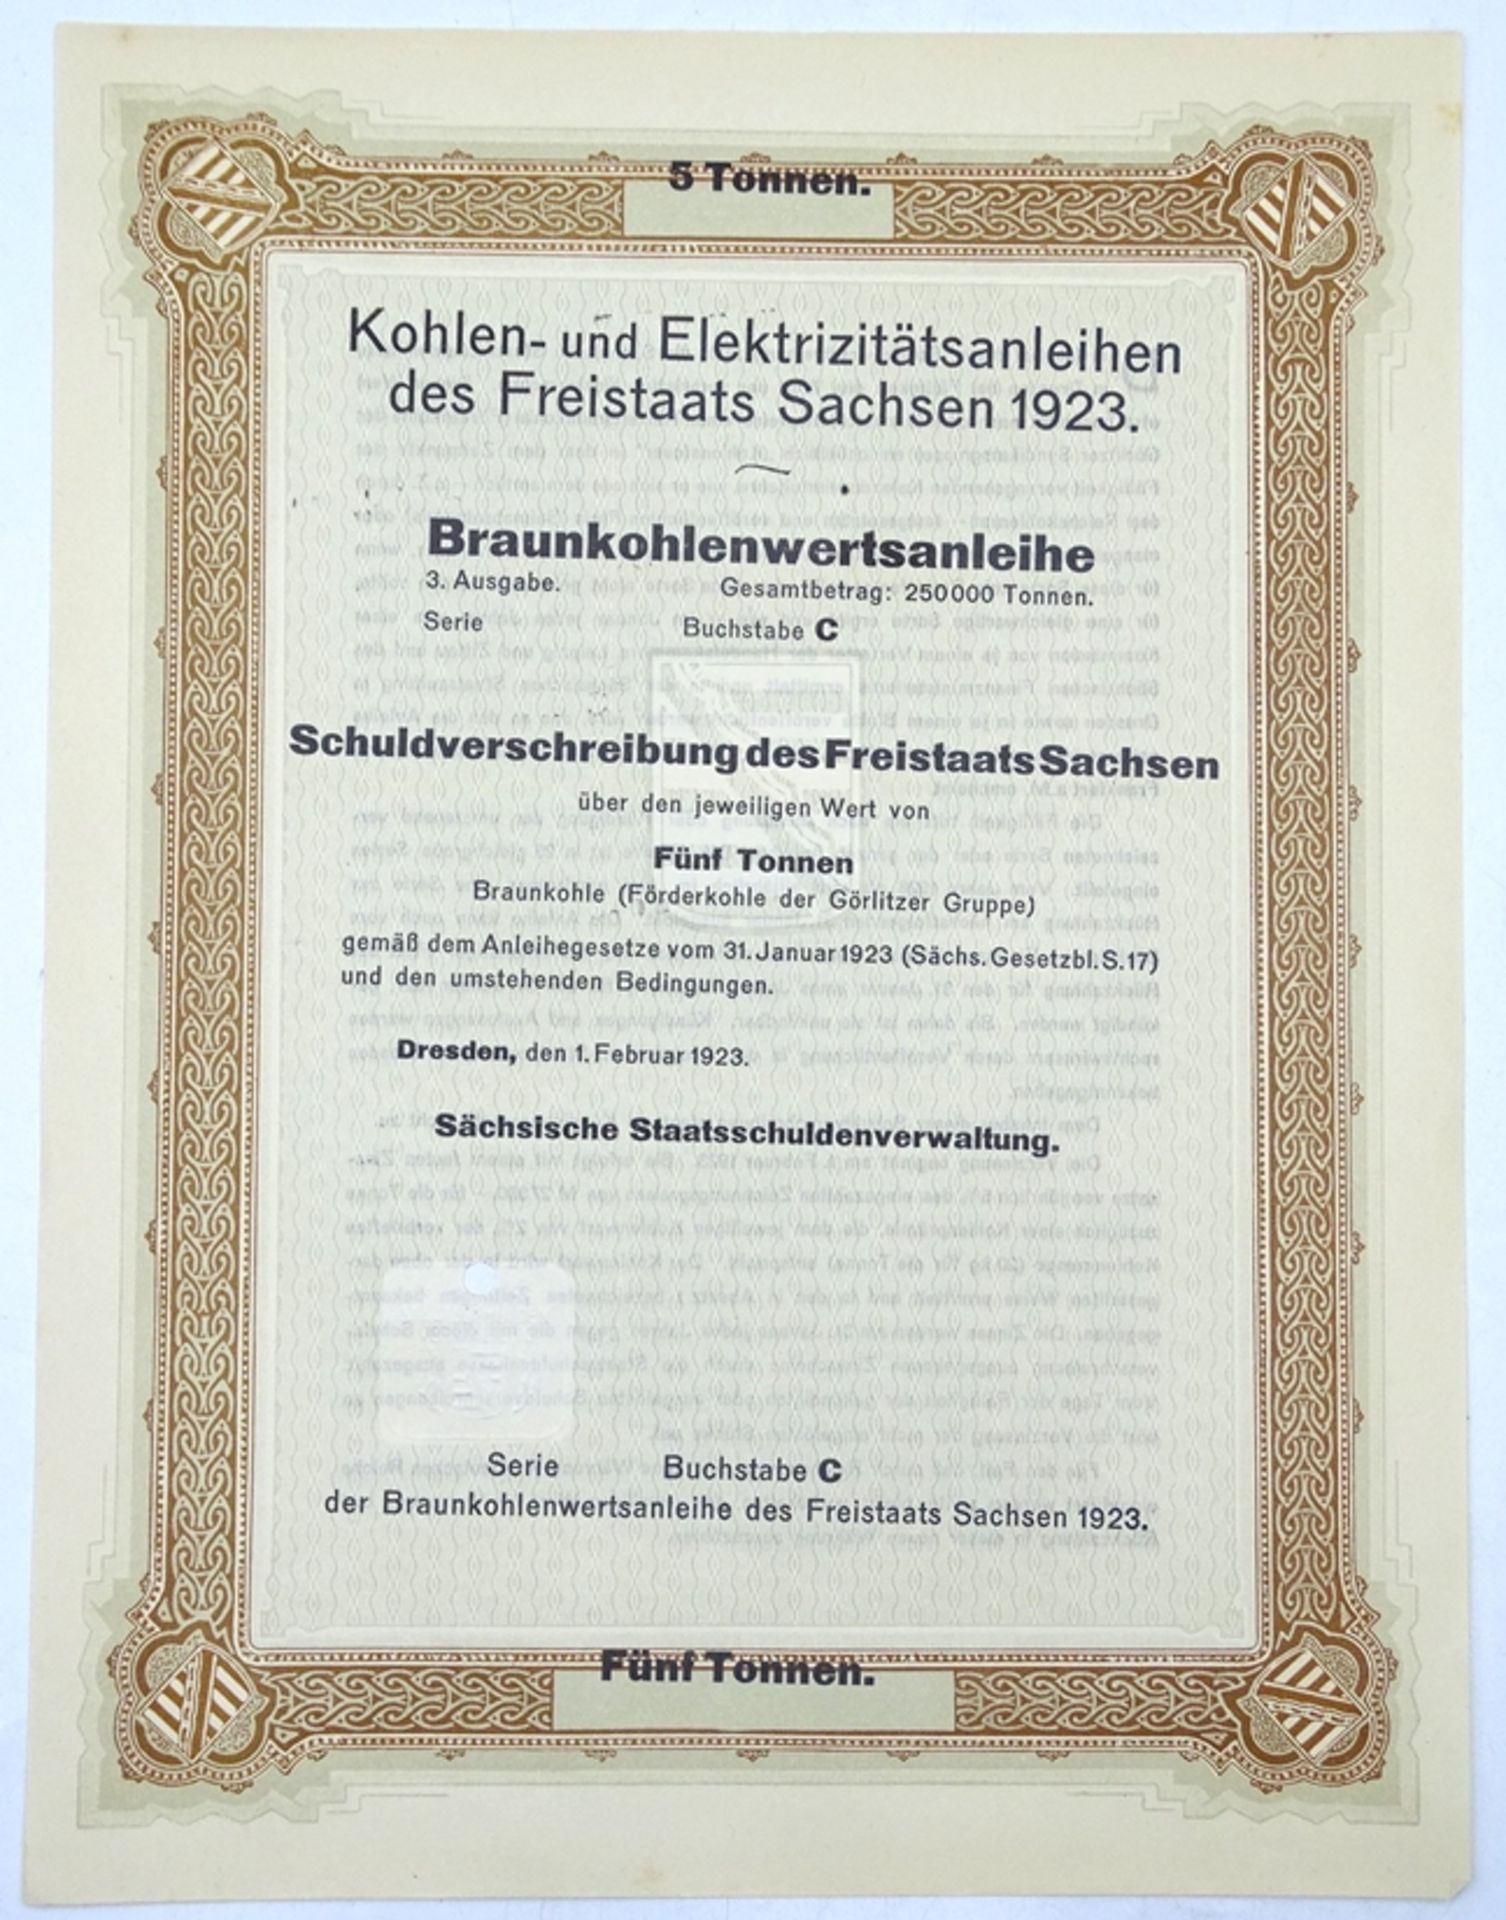 Braunkohlenwertsanleihe - Schuldverschreibung des Freistaats Sachsen über 5 Tonne, 1923